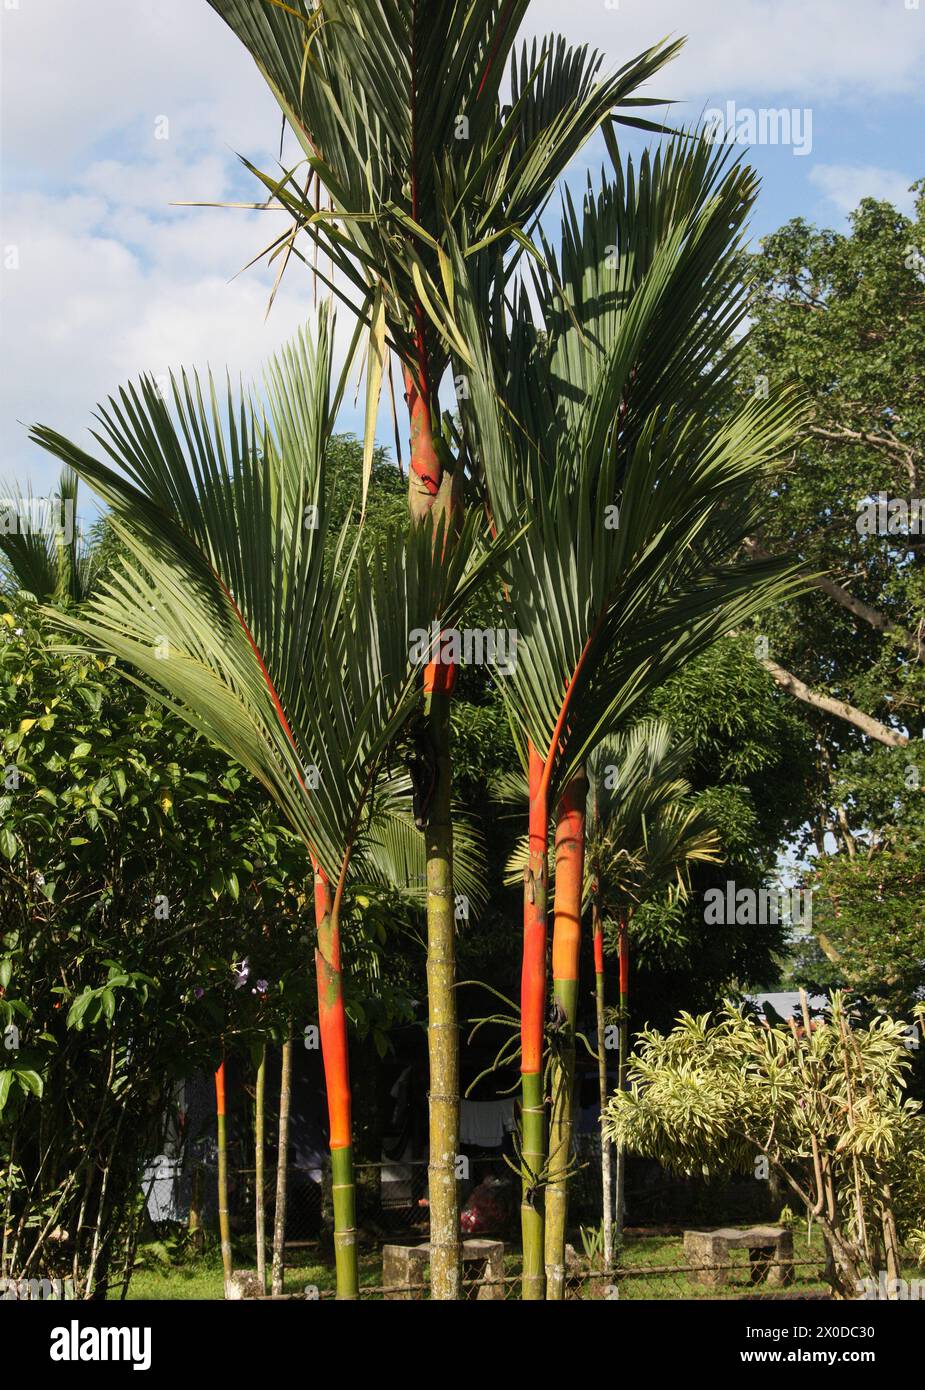 Red Sealing Wachspalme auch bekannt als Lippenstiftpalme oder Rajah Palm, Cyrtostachys renda, Arecaceae, Palmae. Tortuguero, Costa Rica. Stockfoto